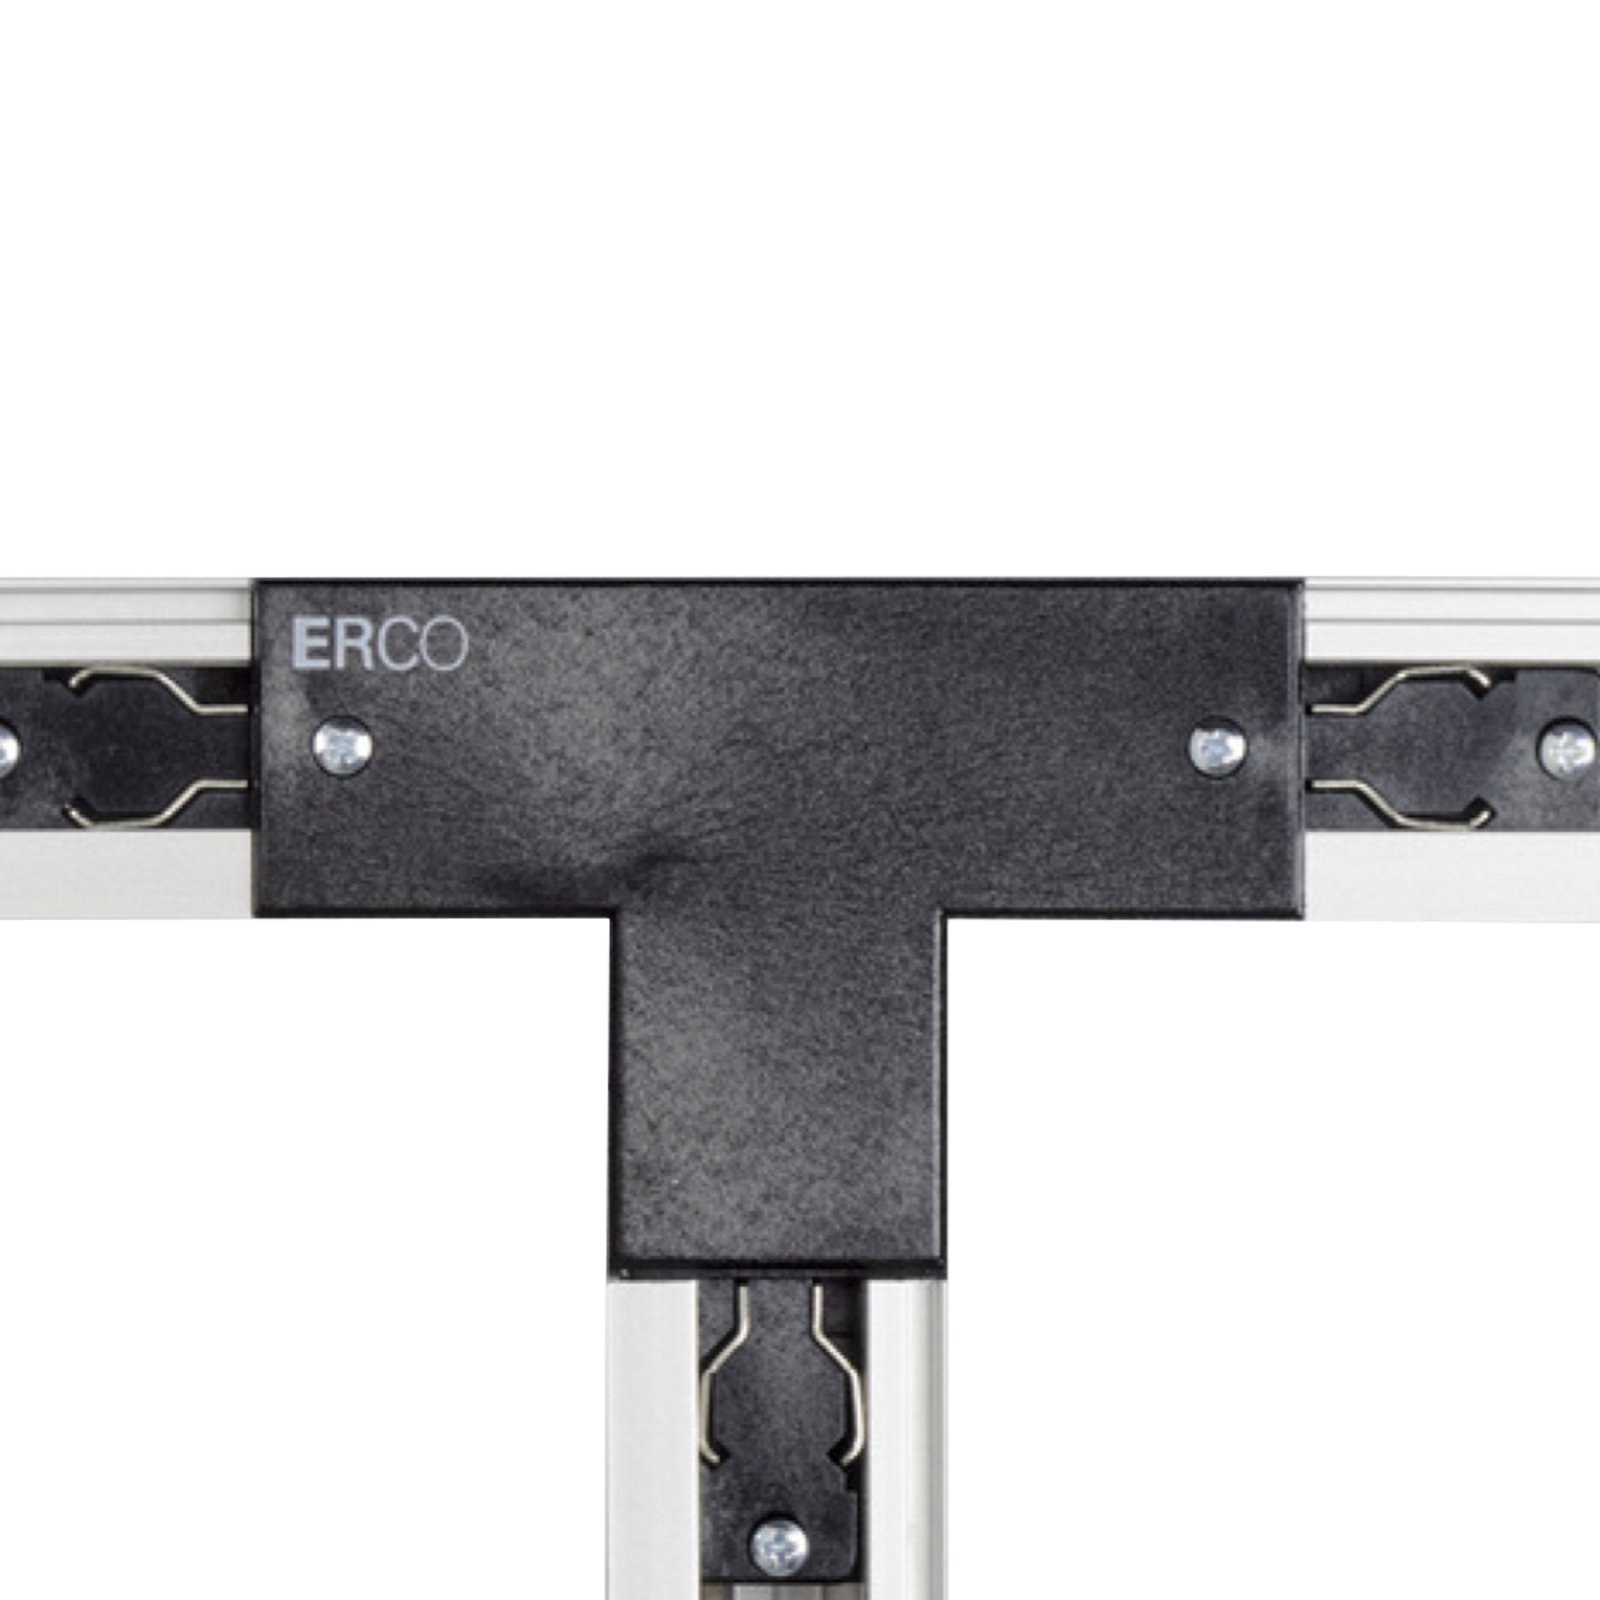 ERCO Lâmpada de proteção direita com conetor em T de 3 circuitos, preto